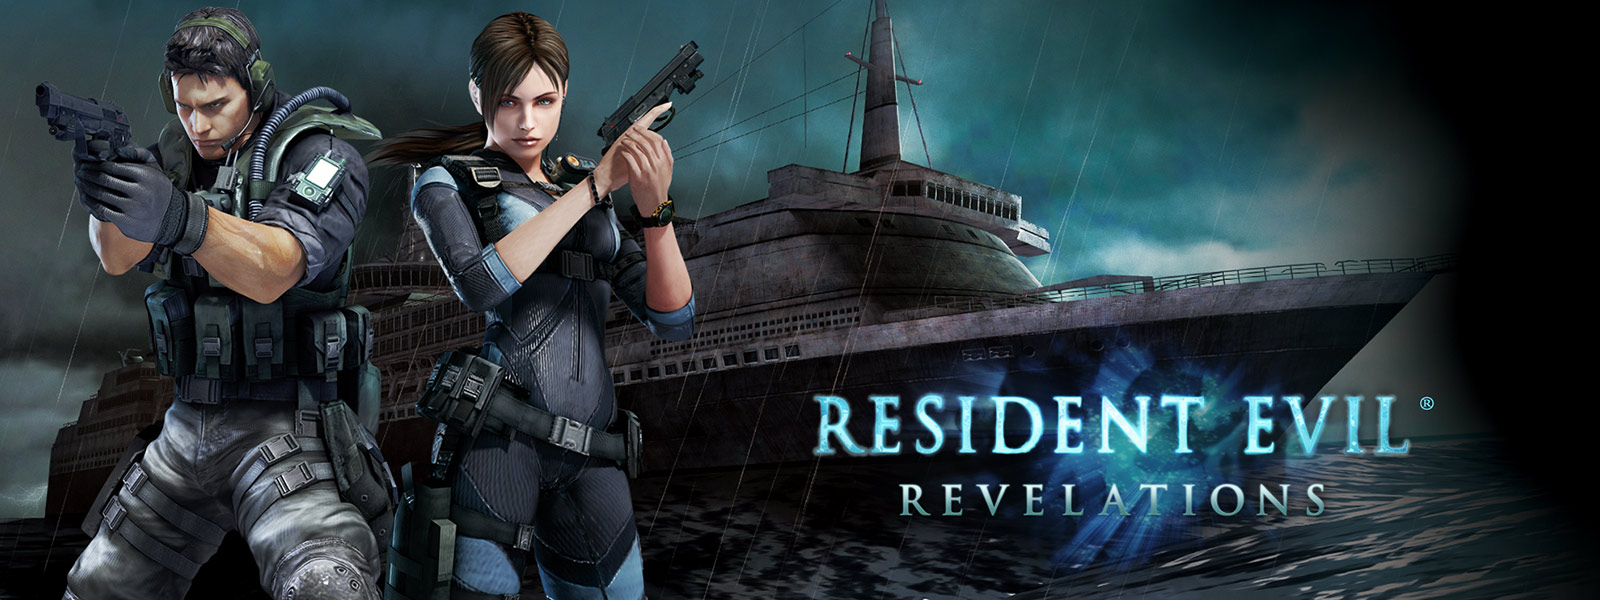 Resident Evil Revelations, deux personnages tenant des pistolets devant un bateau de croisière fantôme